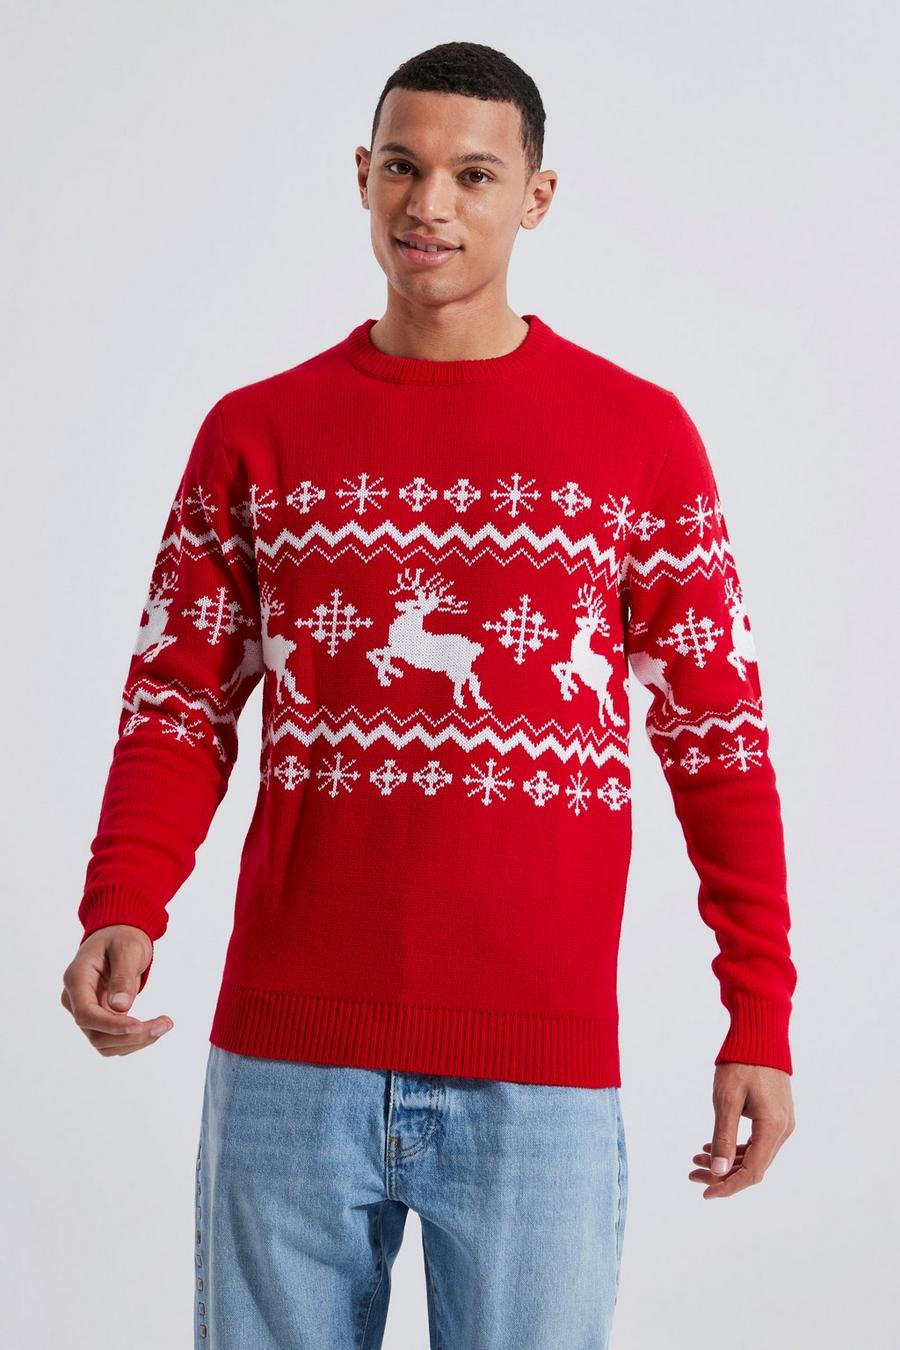 אדום סוודר לחג המולד עם פאנל אייל הצפון בסגנון פייר אייל, לגברים גבוהים